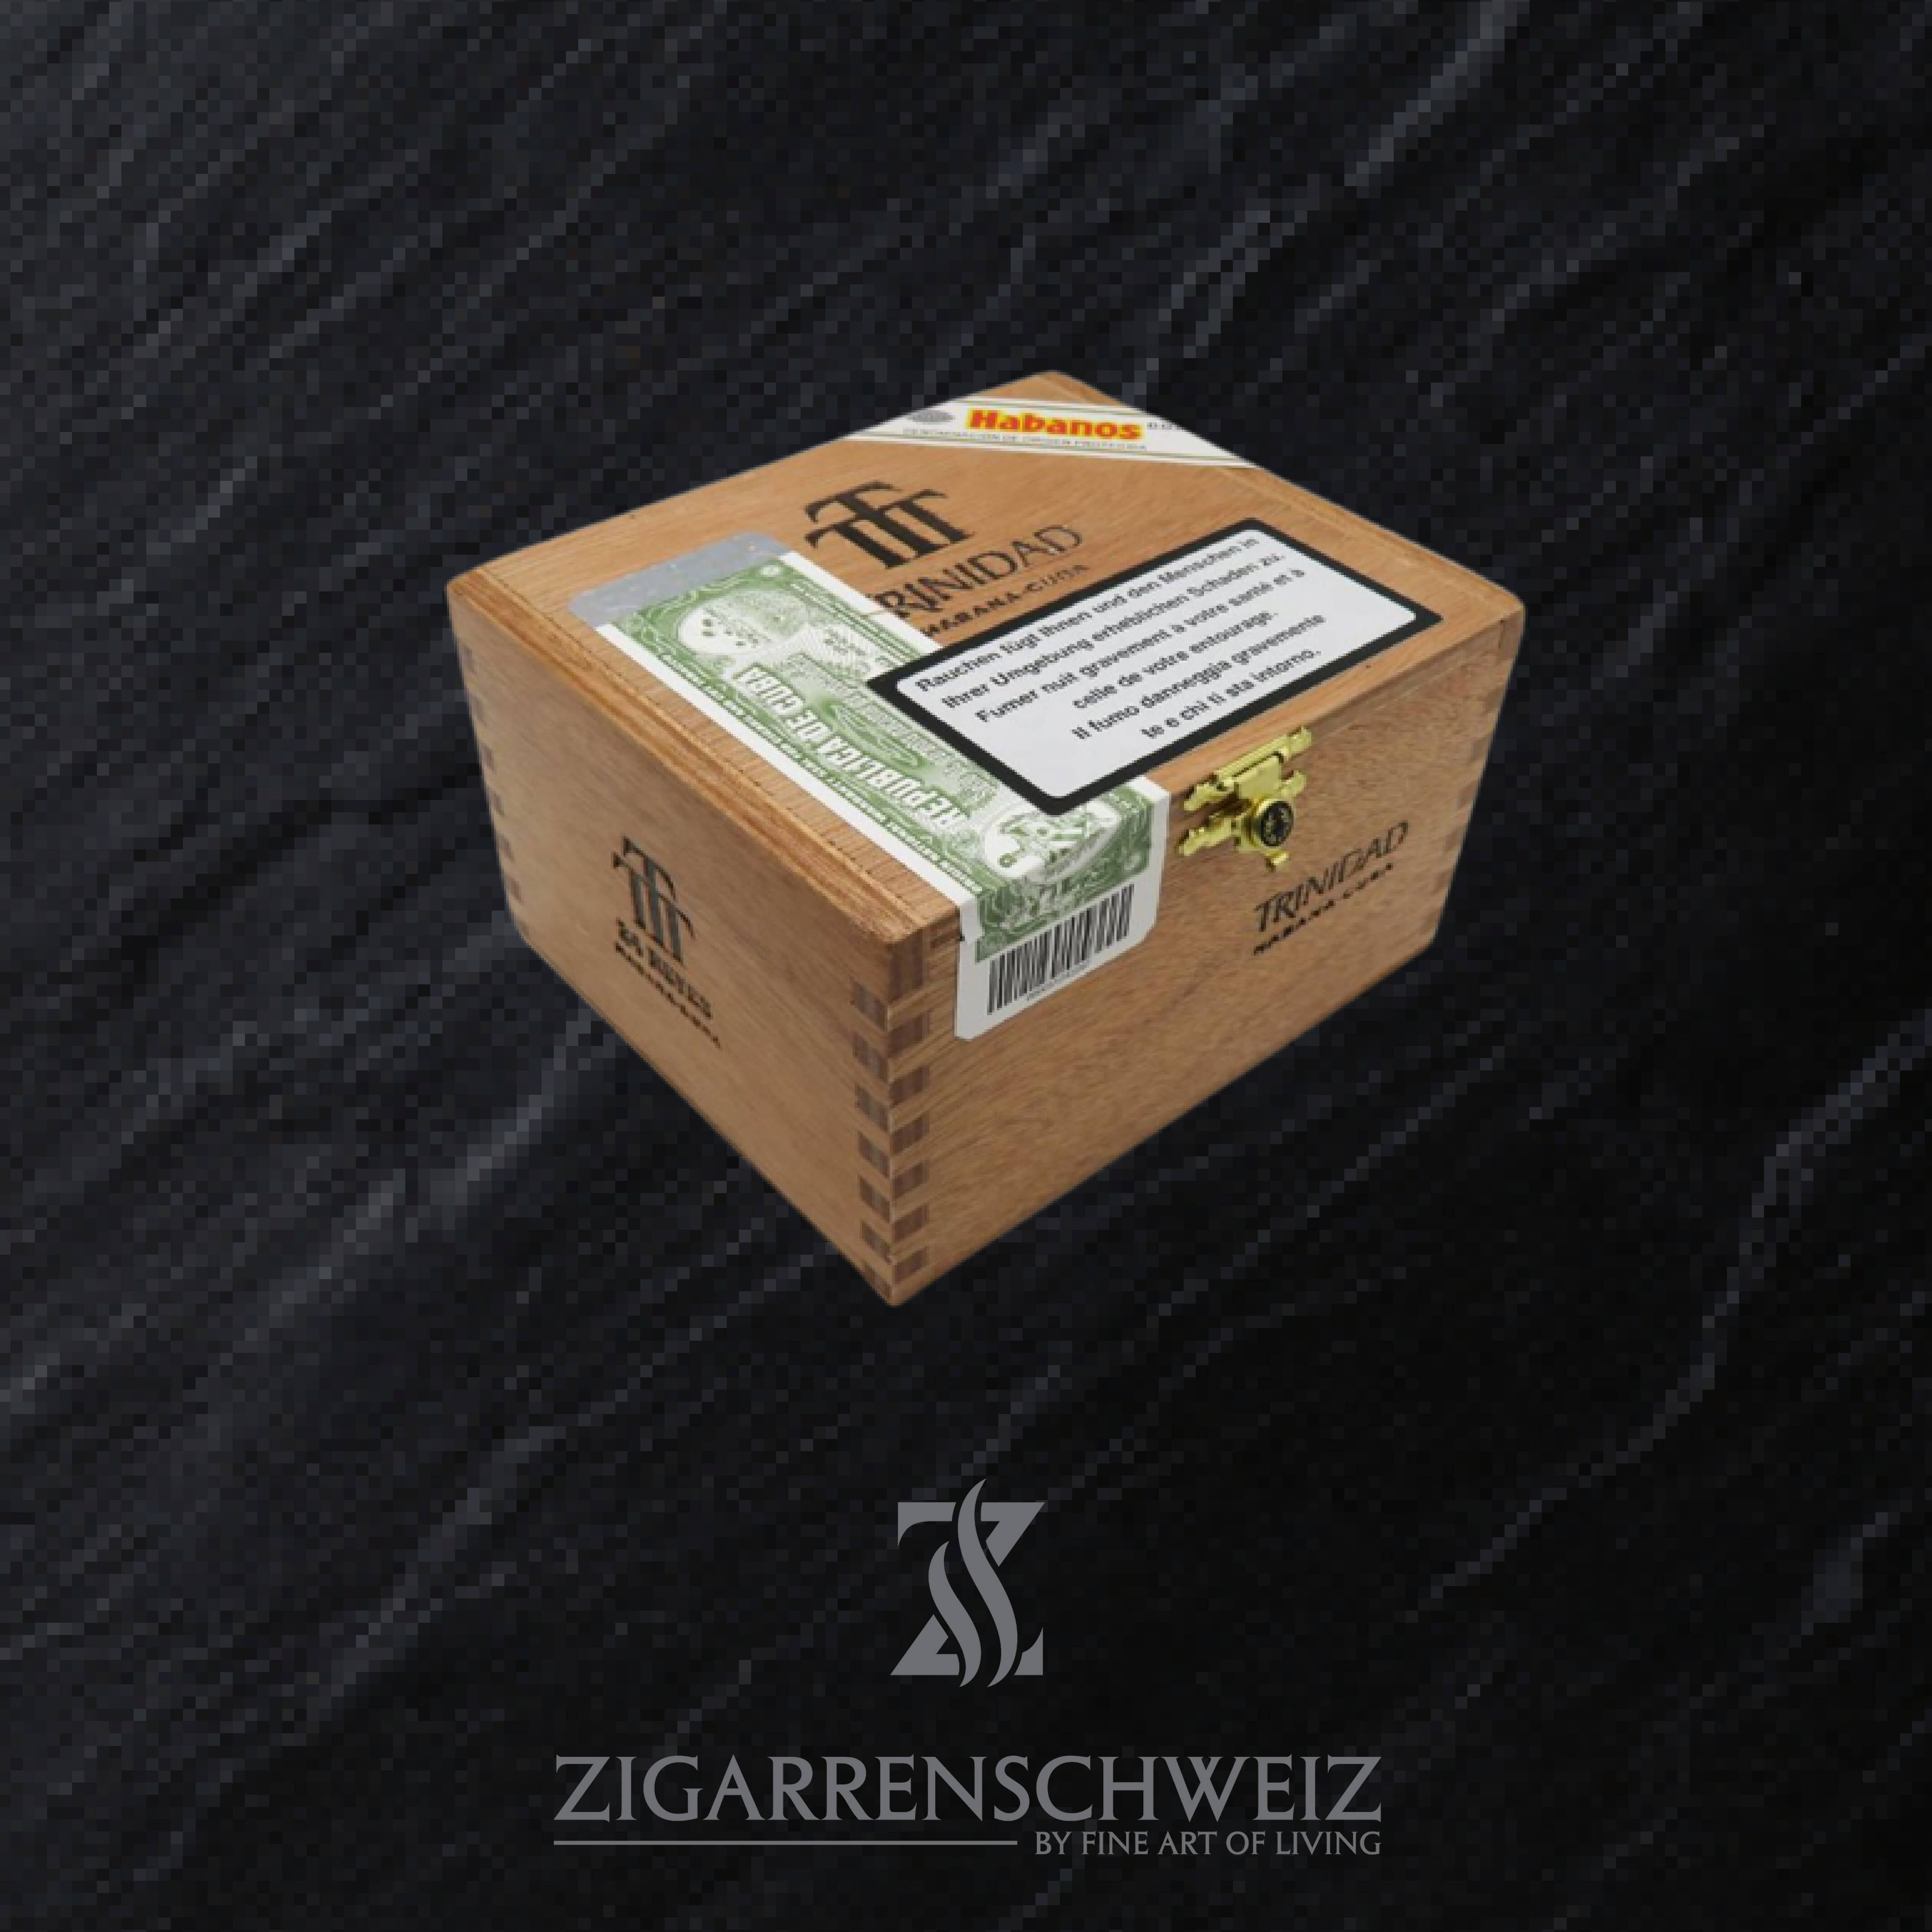 24er Kiste Trinidad Reyes Zigarren aus Kuba ungeöffnet